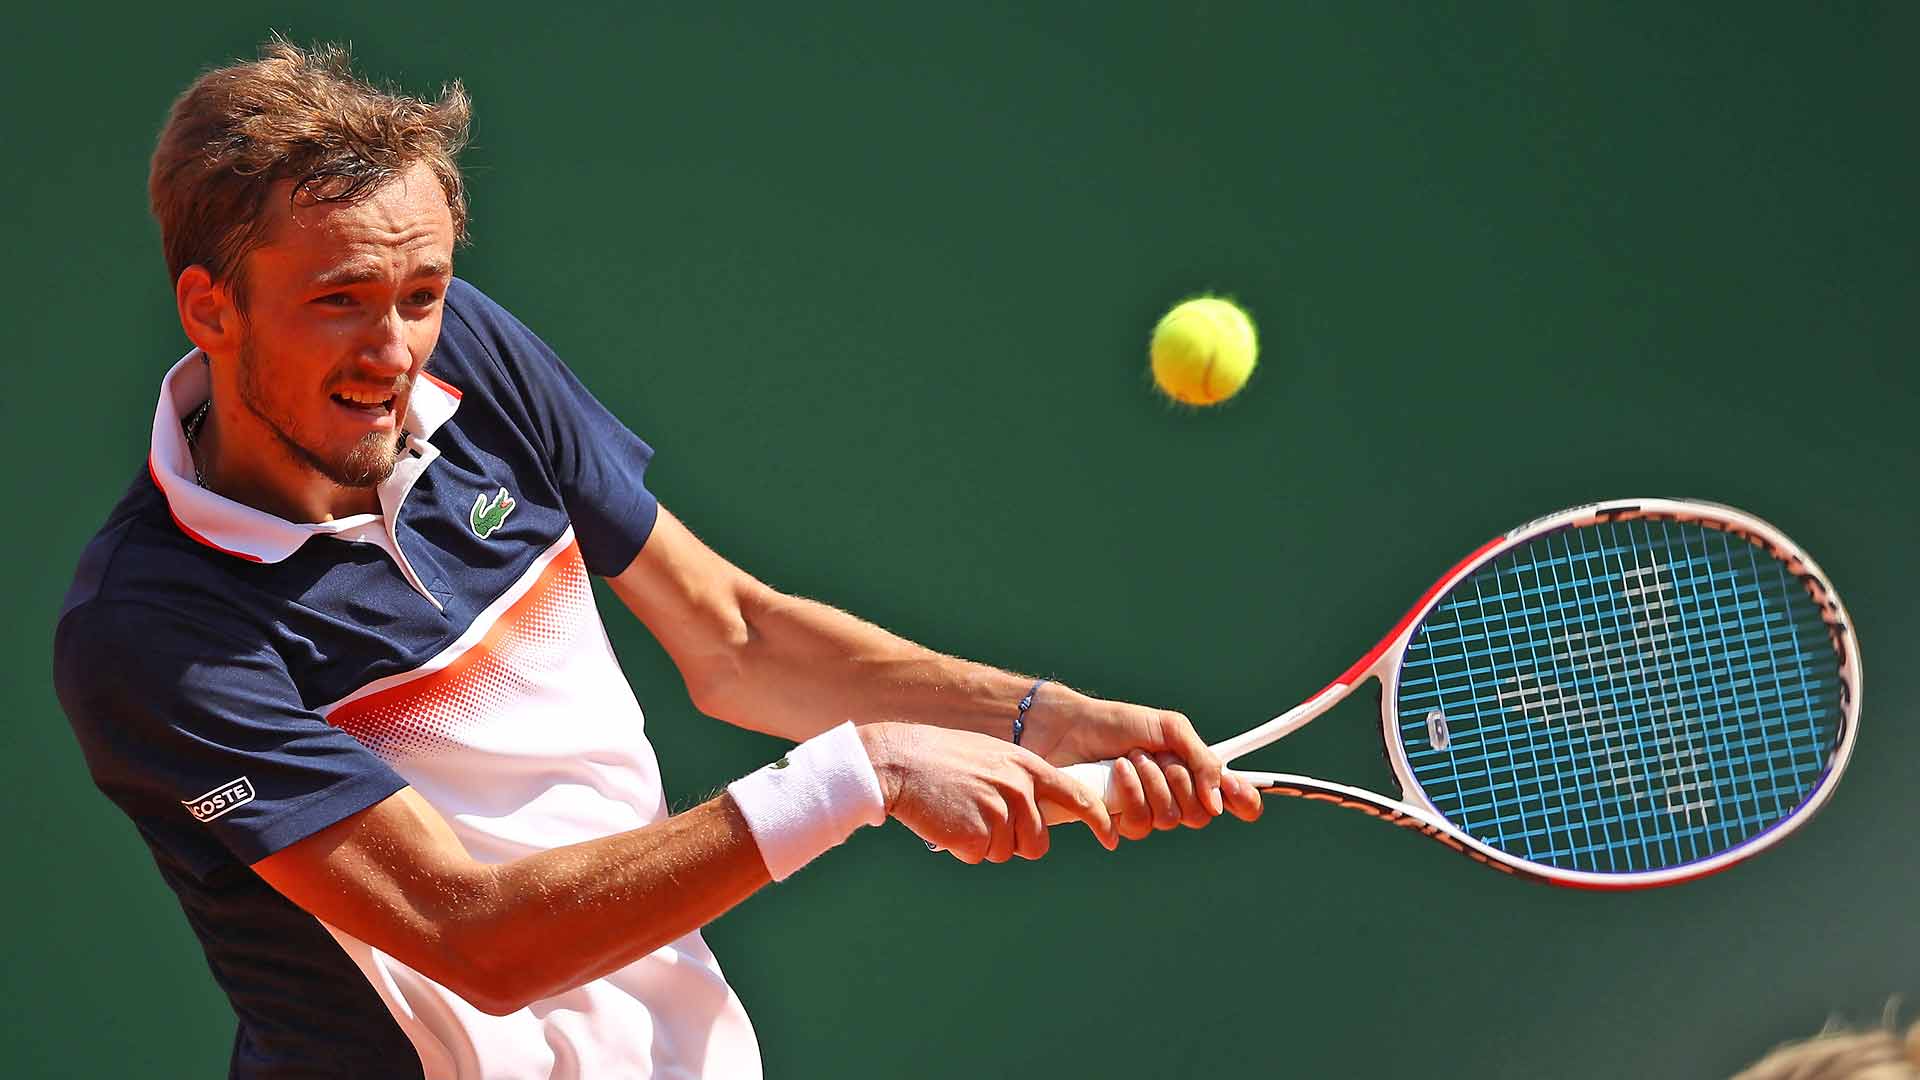 Djokovic Medvedev / Tennis Daniil Medvedev hammers Novak Djokovic at